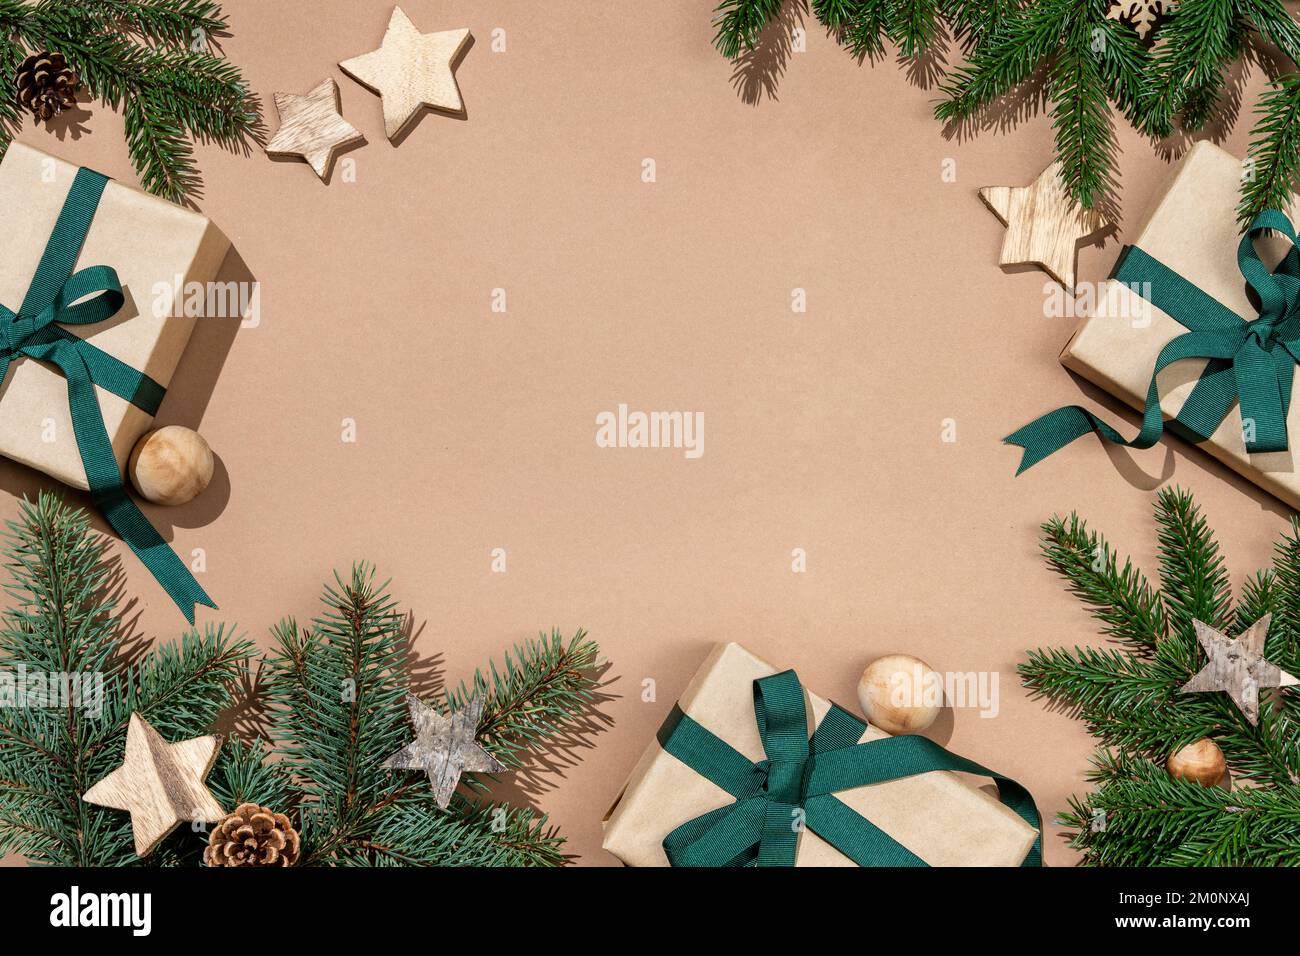 Branches de sapin de Noël décorées d'étoiles en bois et de boîtes cadeaux sur fond beige. Joyeux Noël et bonne année concept Banque D'Images